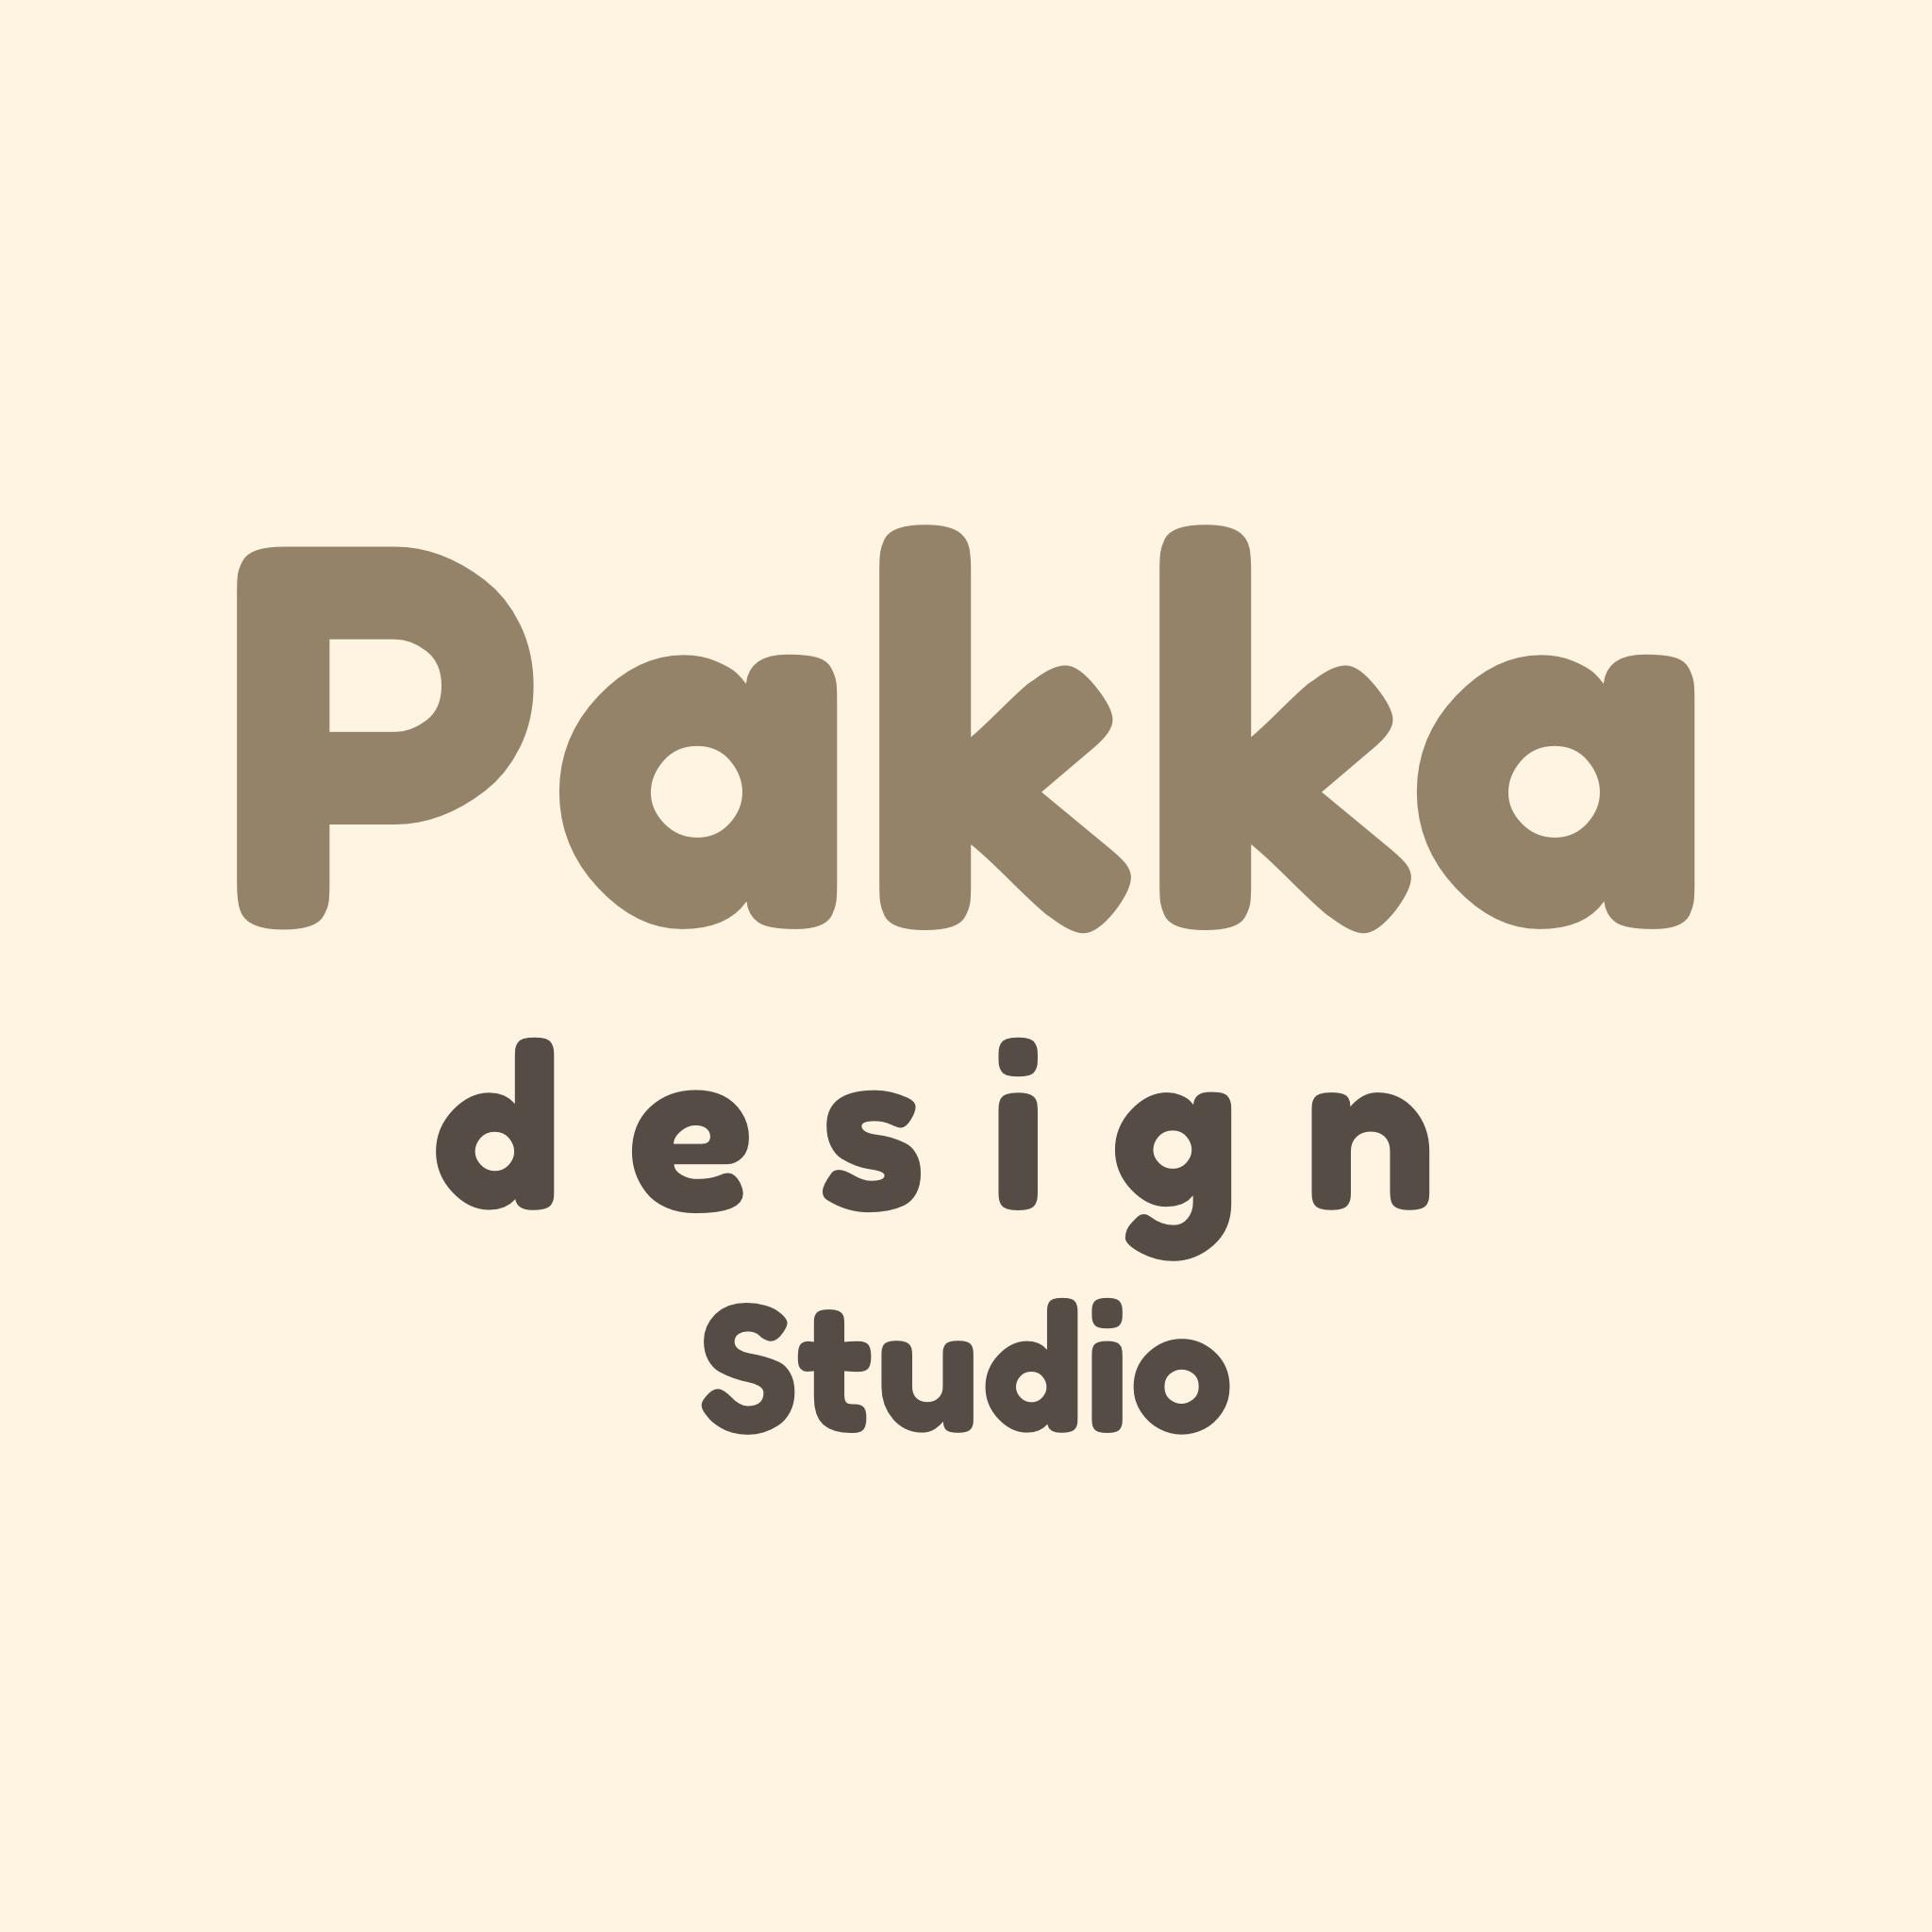 Pakka Design Studio